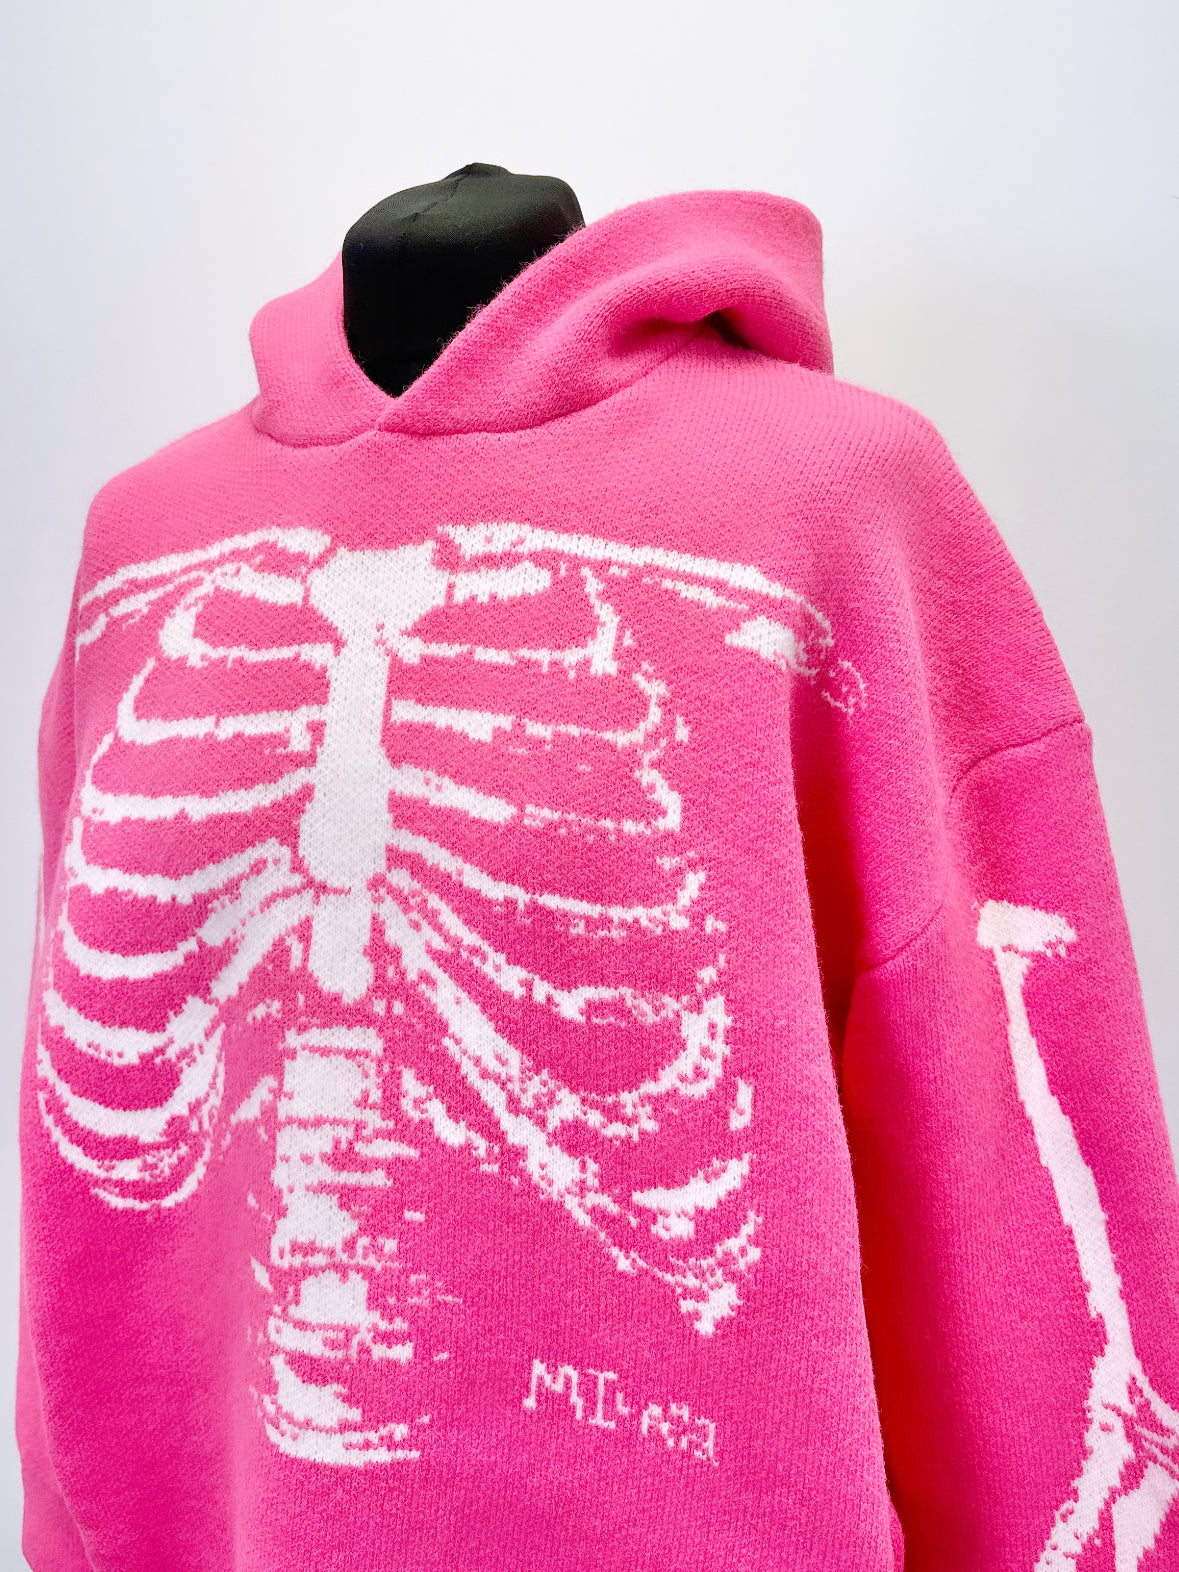 Electric Pink Bones Heavyweight Knit Hoodie.